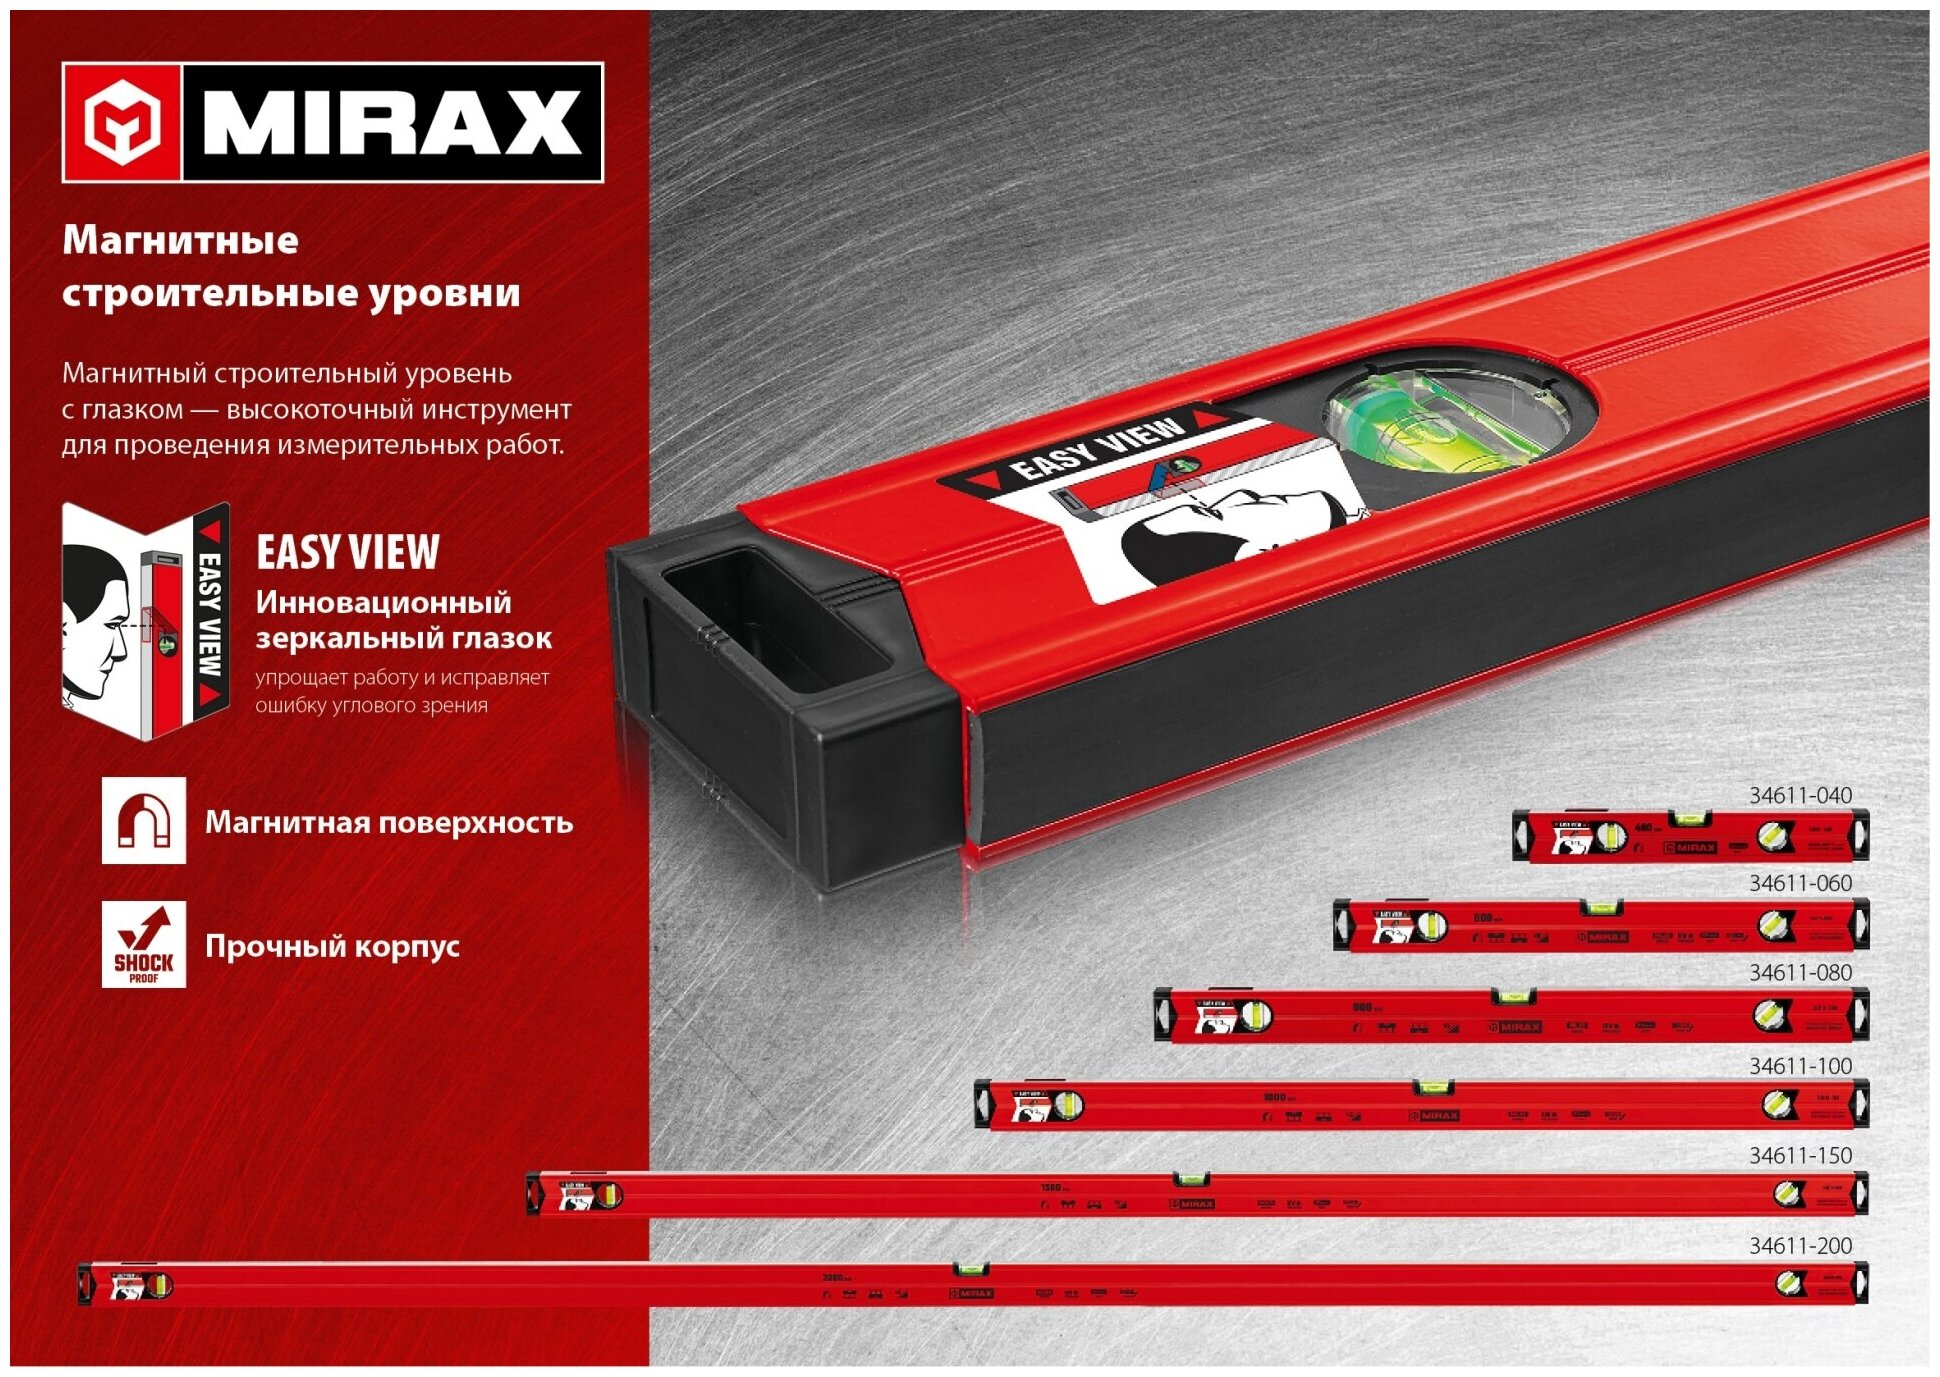 MIRAX 1500 мм, с зеркальным глазком, магнитный уровень (34611-150)